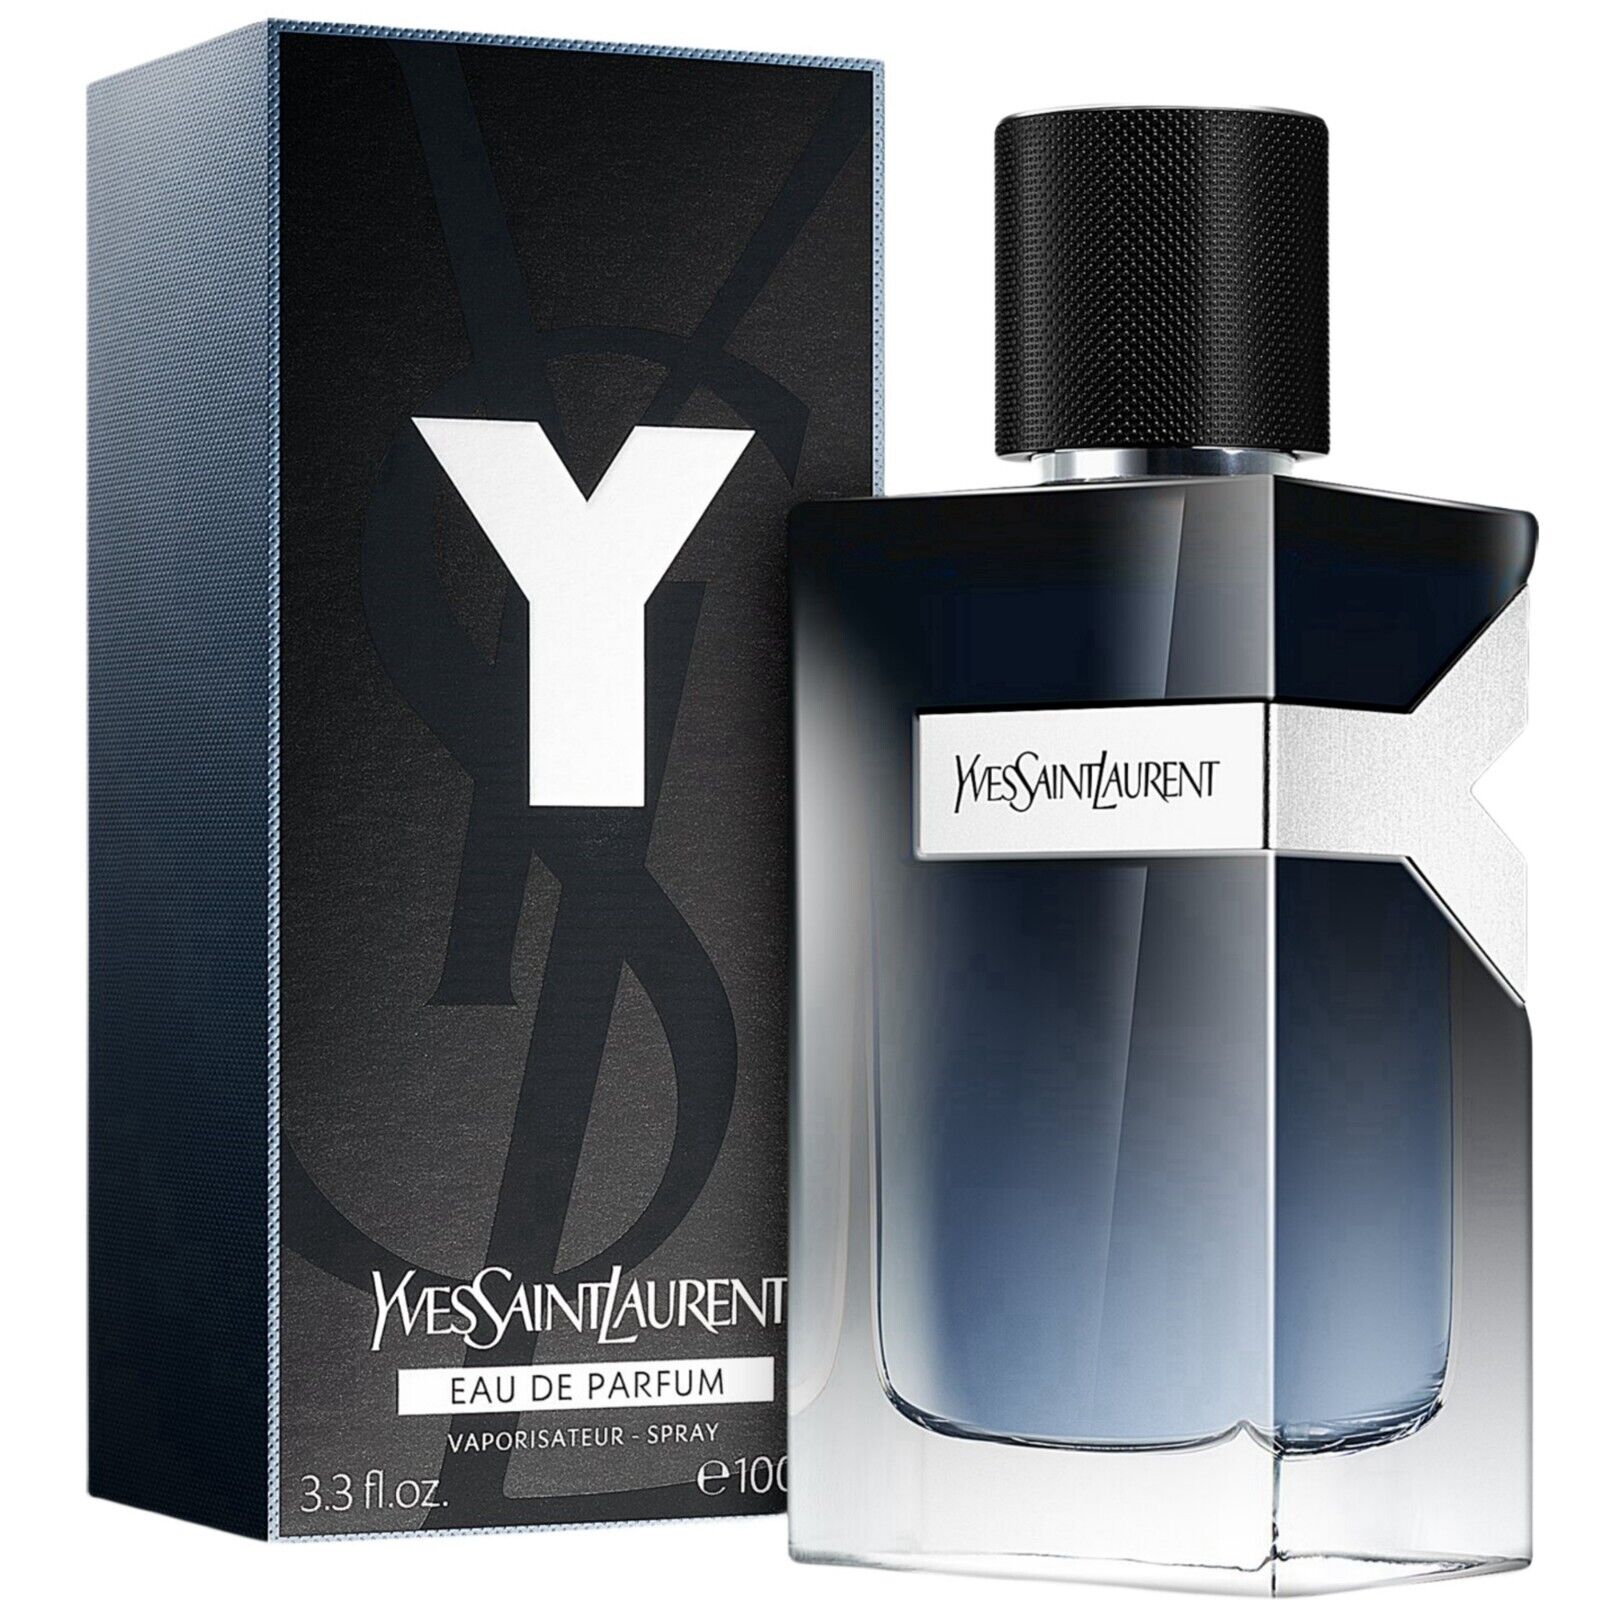 Yves Saint Laurent Y Eau De Parfum EDP Cologne Spray For Men 3.3 Oz 100 ml